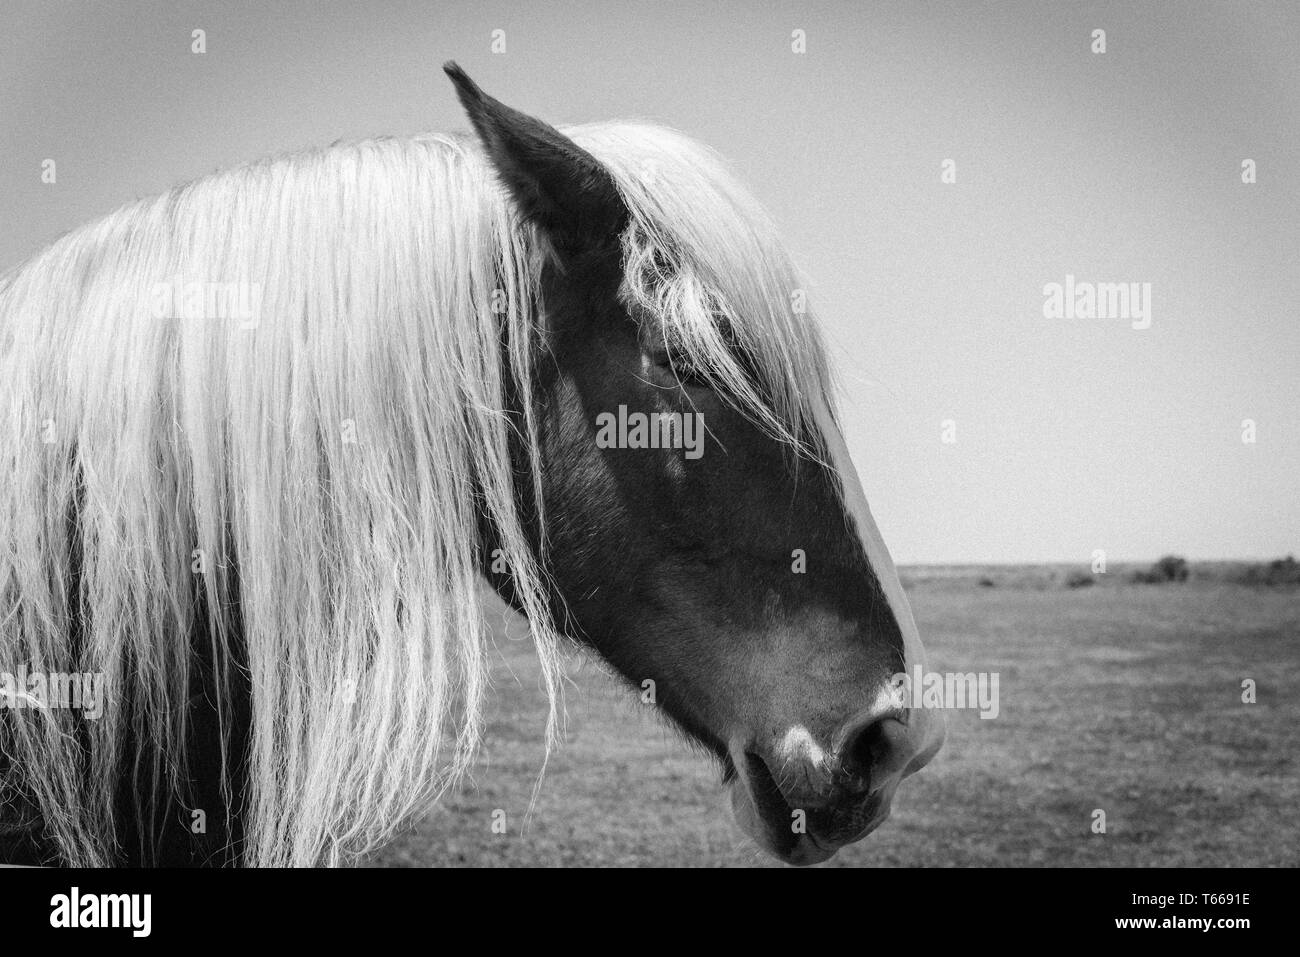 Image filtrée de tête de cheval belge à l'American Farm ranch close-up Banque D'Images